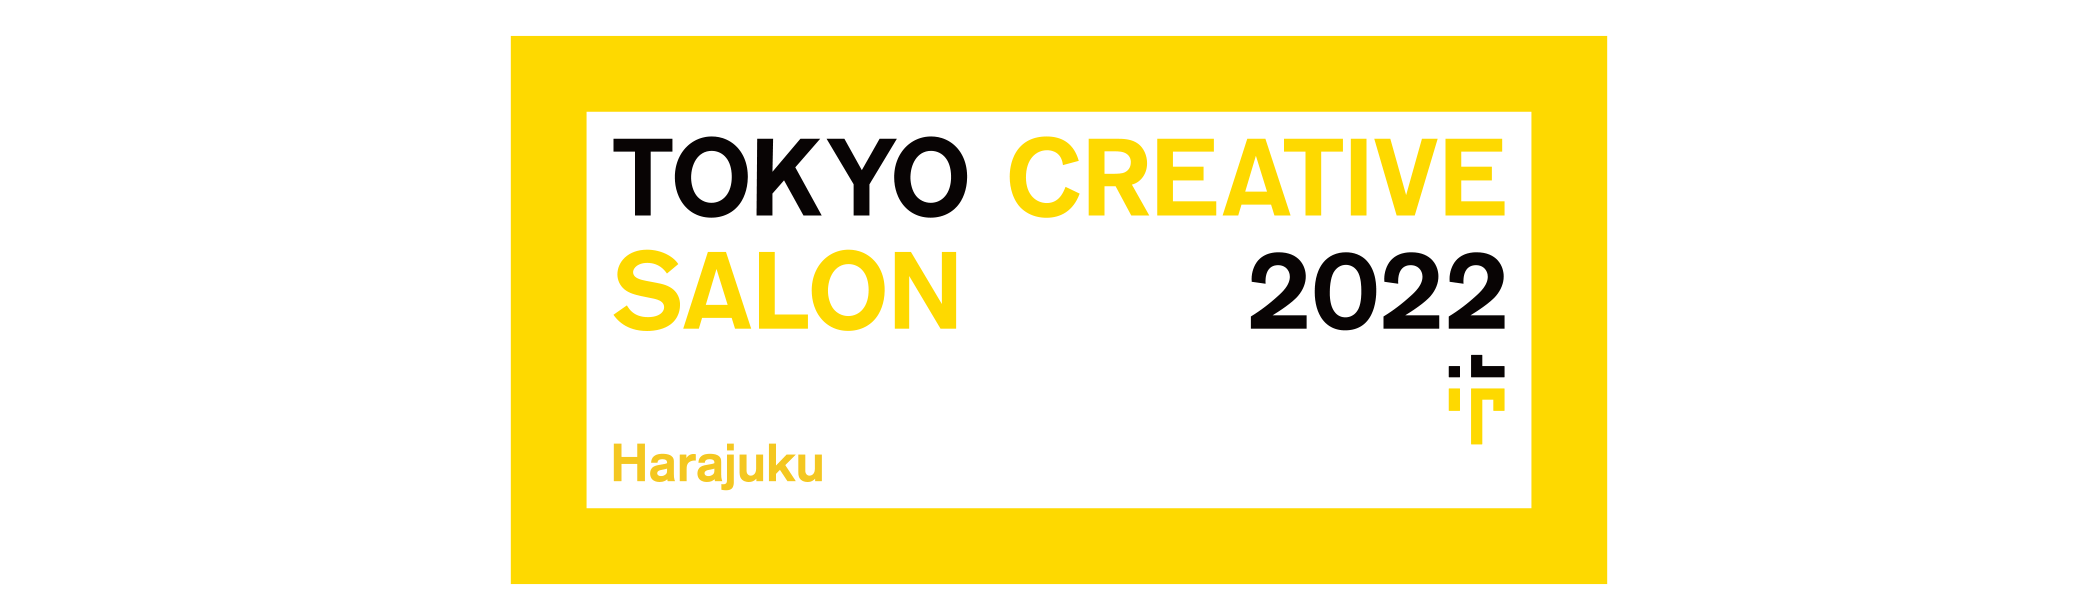 TOKYO CREATIVE SALON HARAJUKU